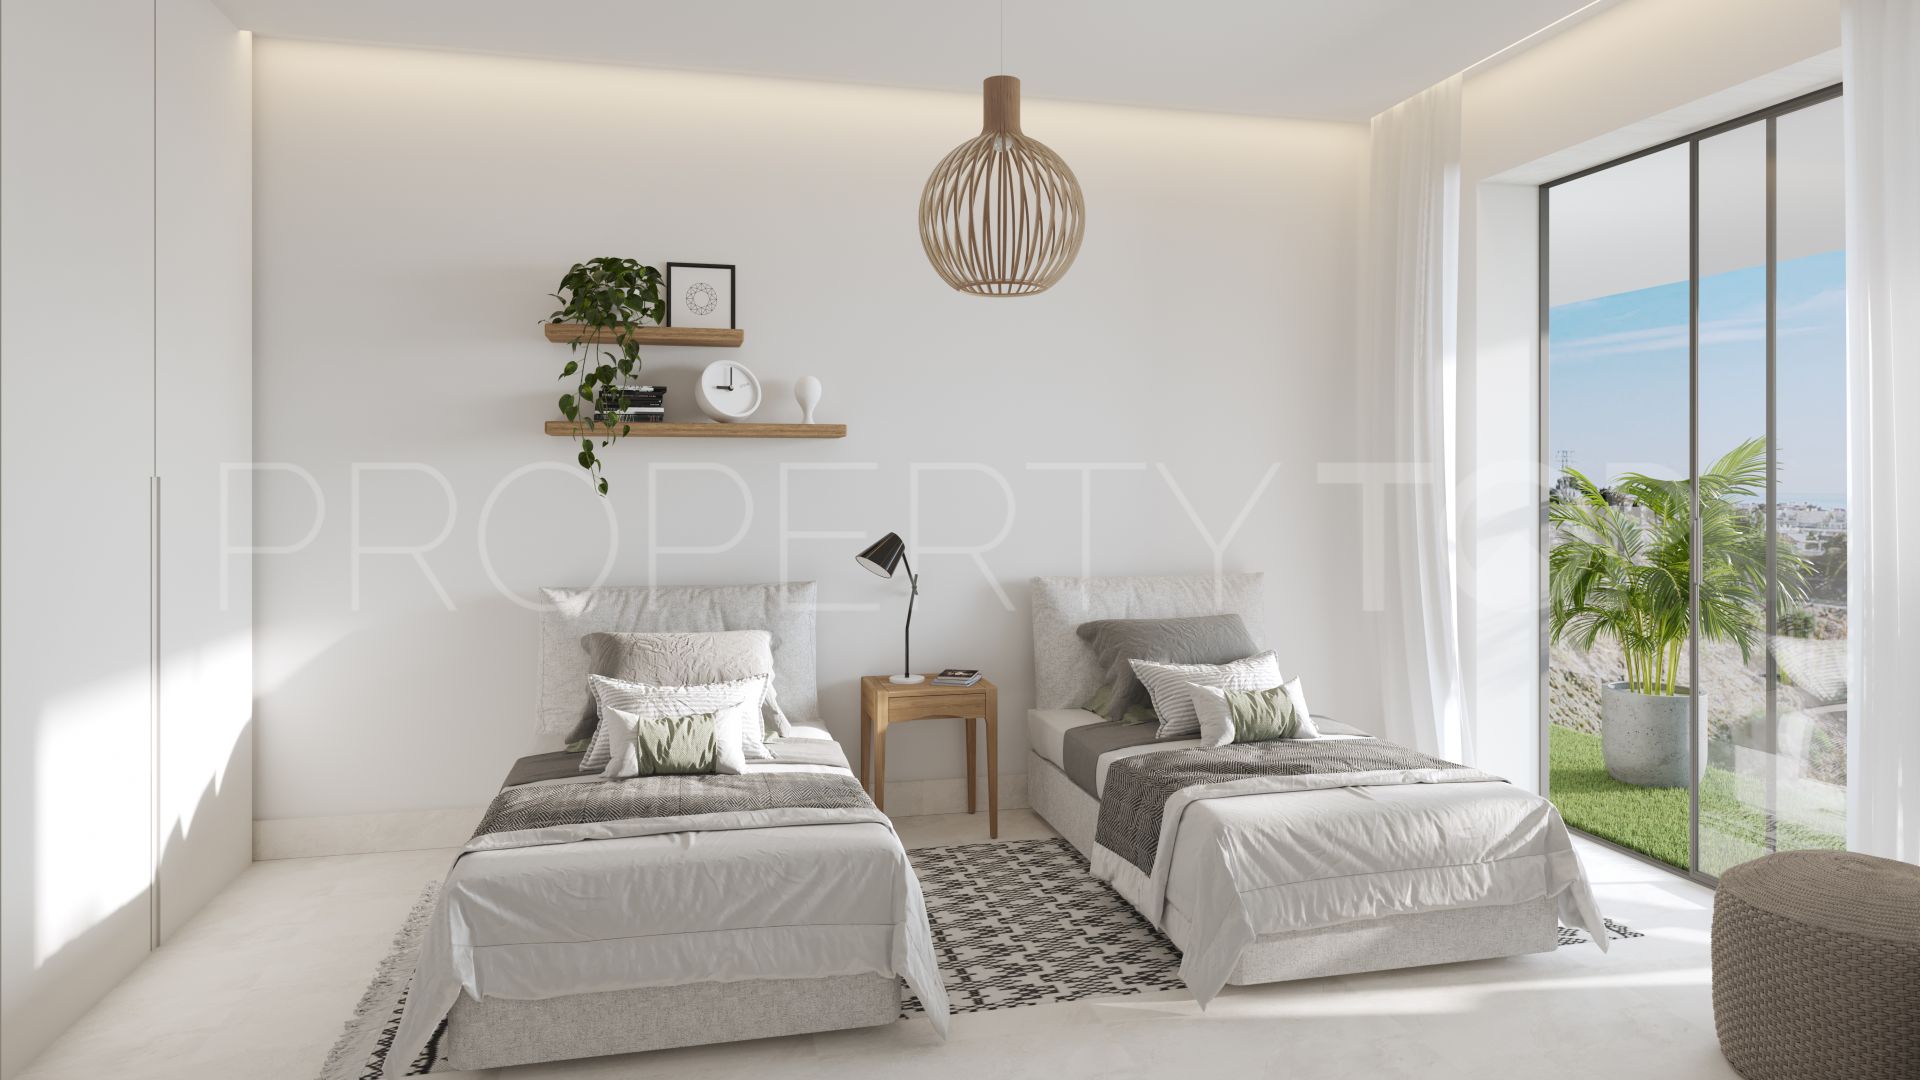 Se vende villa pareada en El Higueron con 3 dormitorios